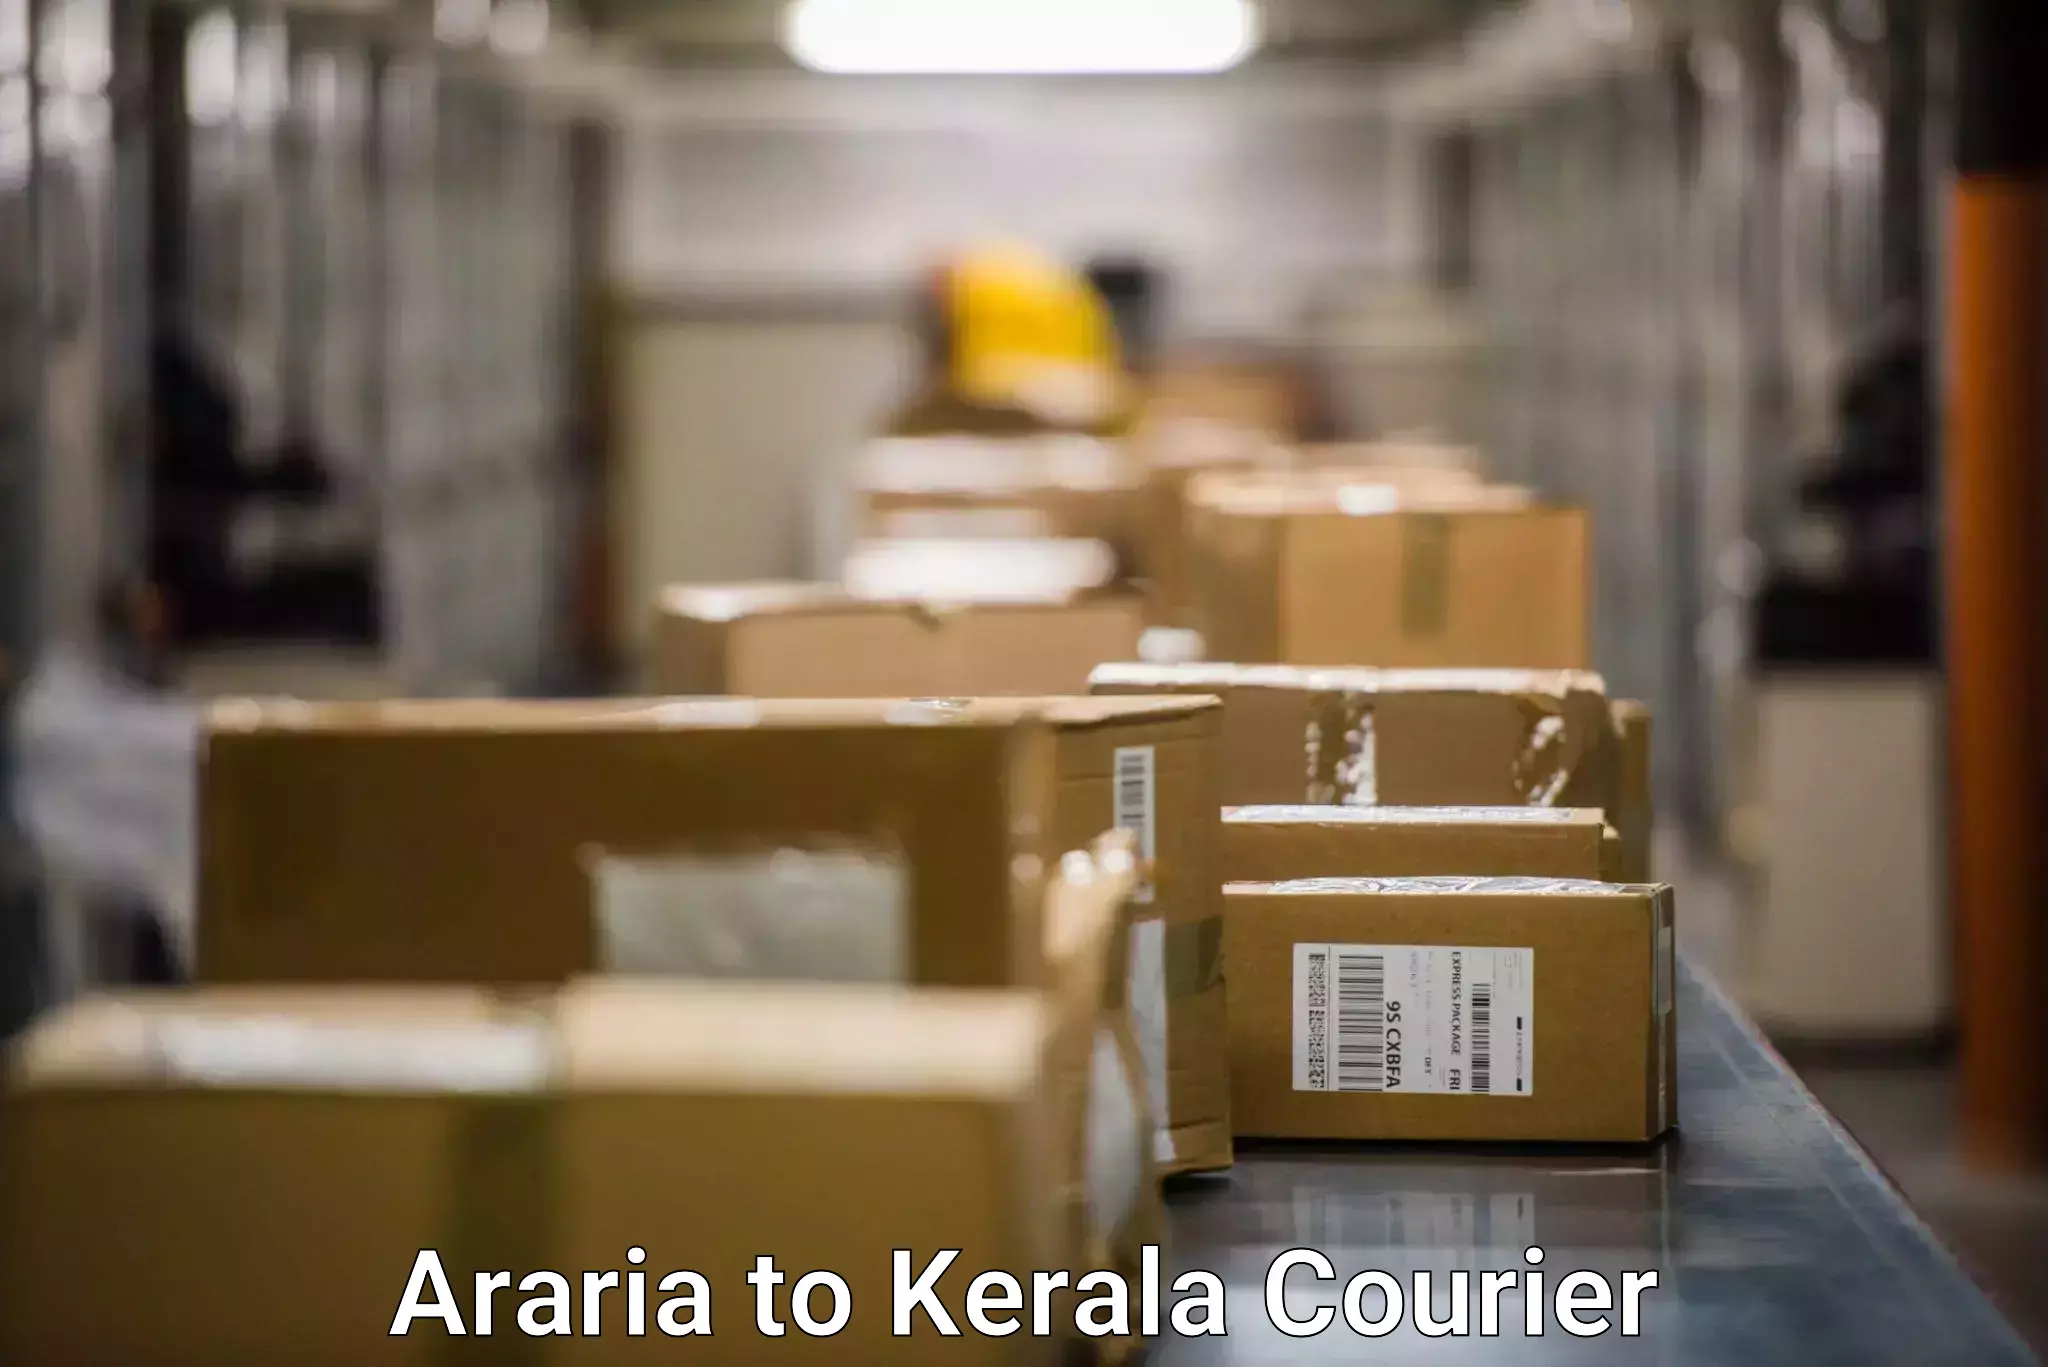 Optimized shipping routes Araria to Kochi